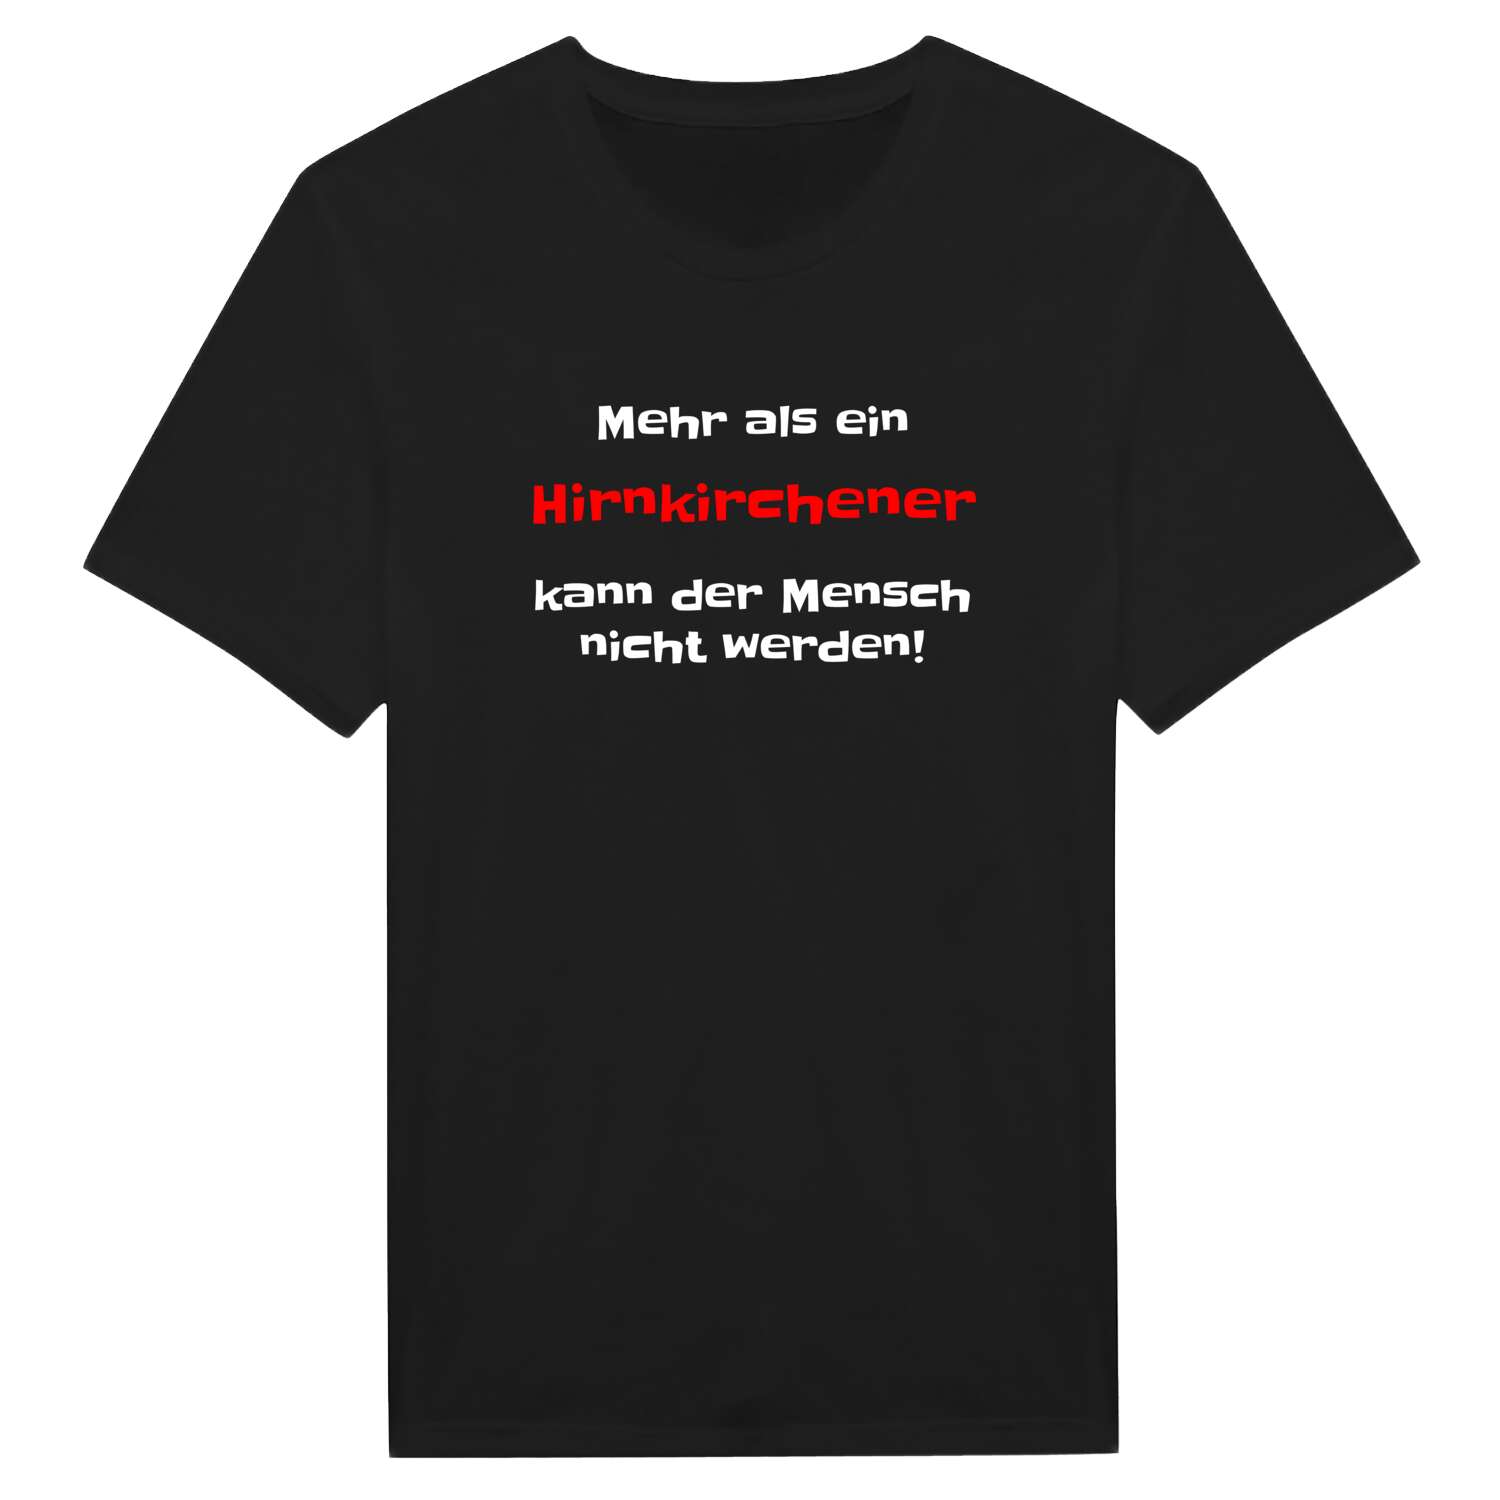 Hirnkirchen T-Shirt »Mehr als ein«